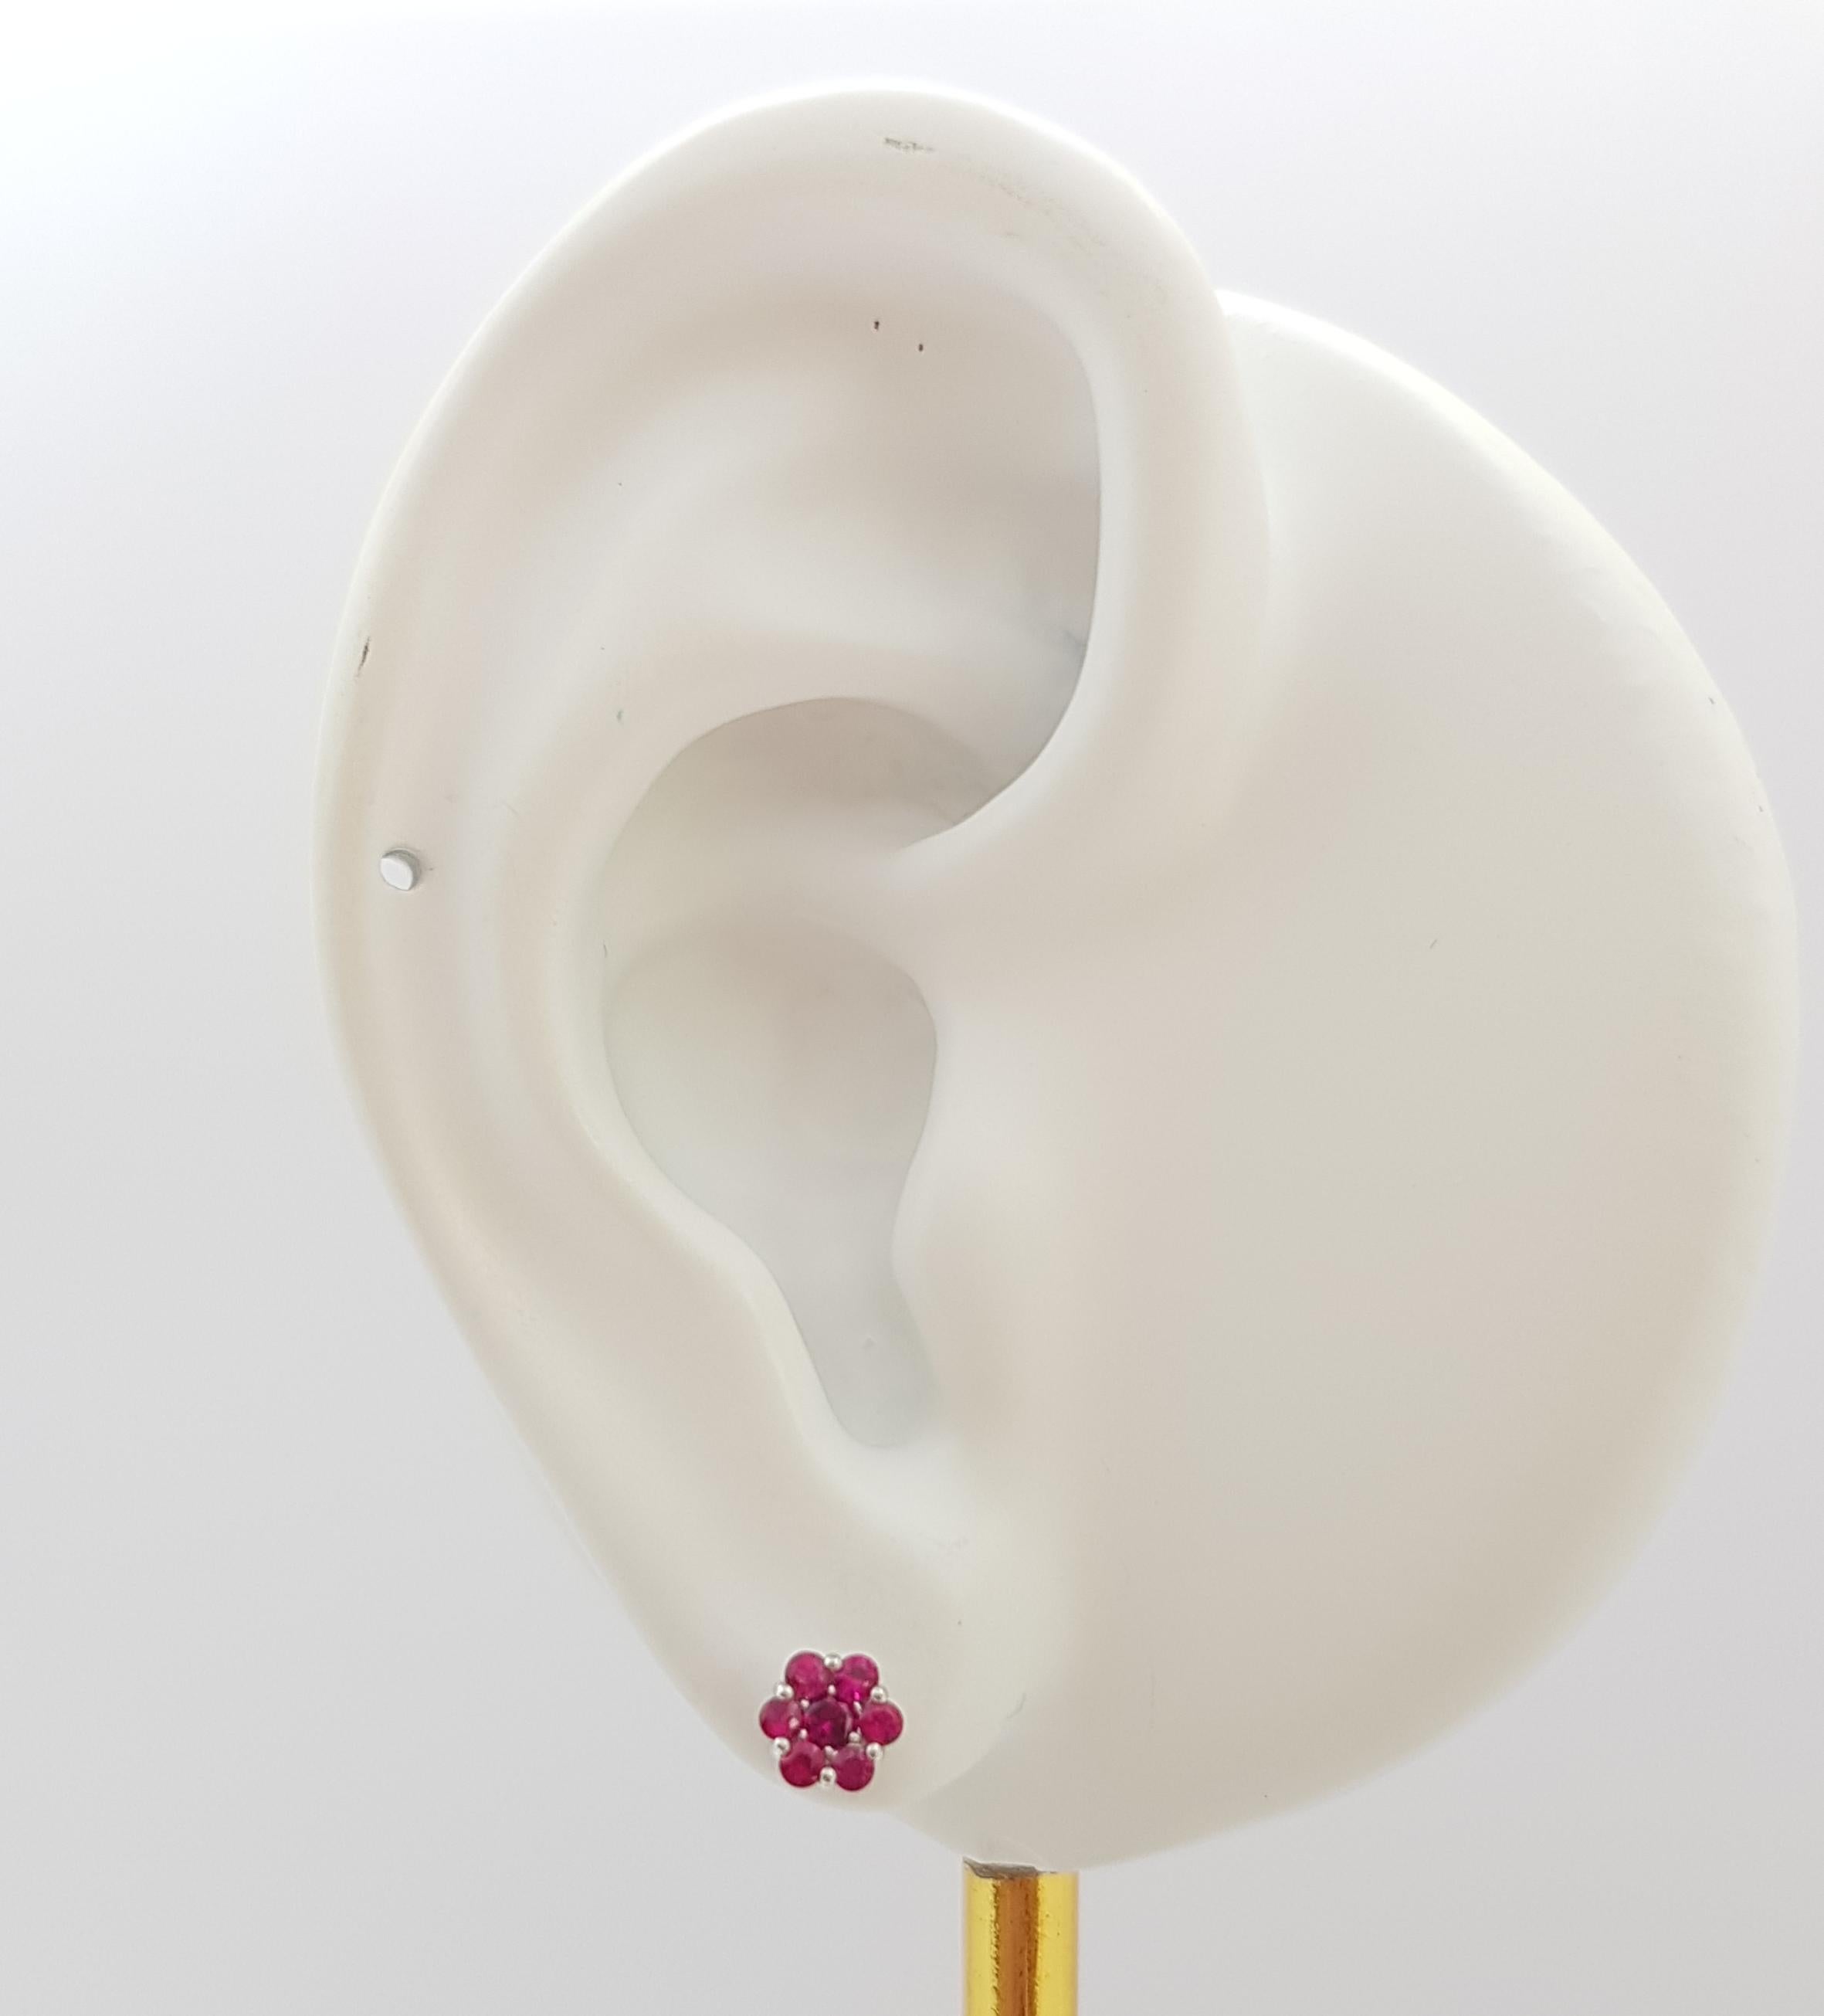 Boucles d'oreilles en or blanc 18K serties de rubis 0,31 carat

Largeur : 0,5 cm 
Longueur : 0.5 cm
Poids total : 1.3 grammes

